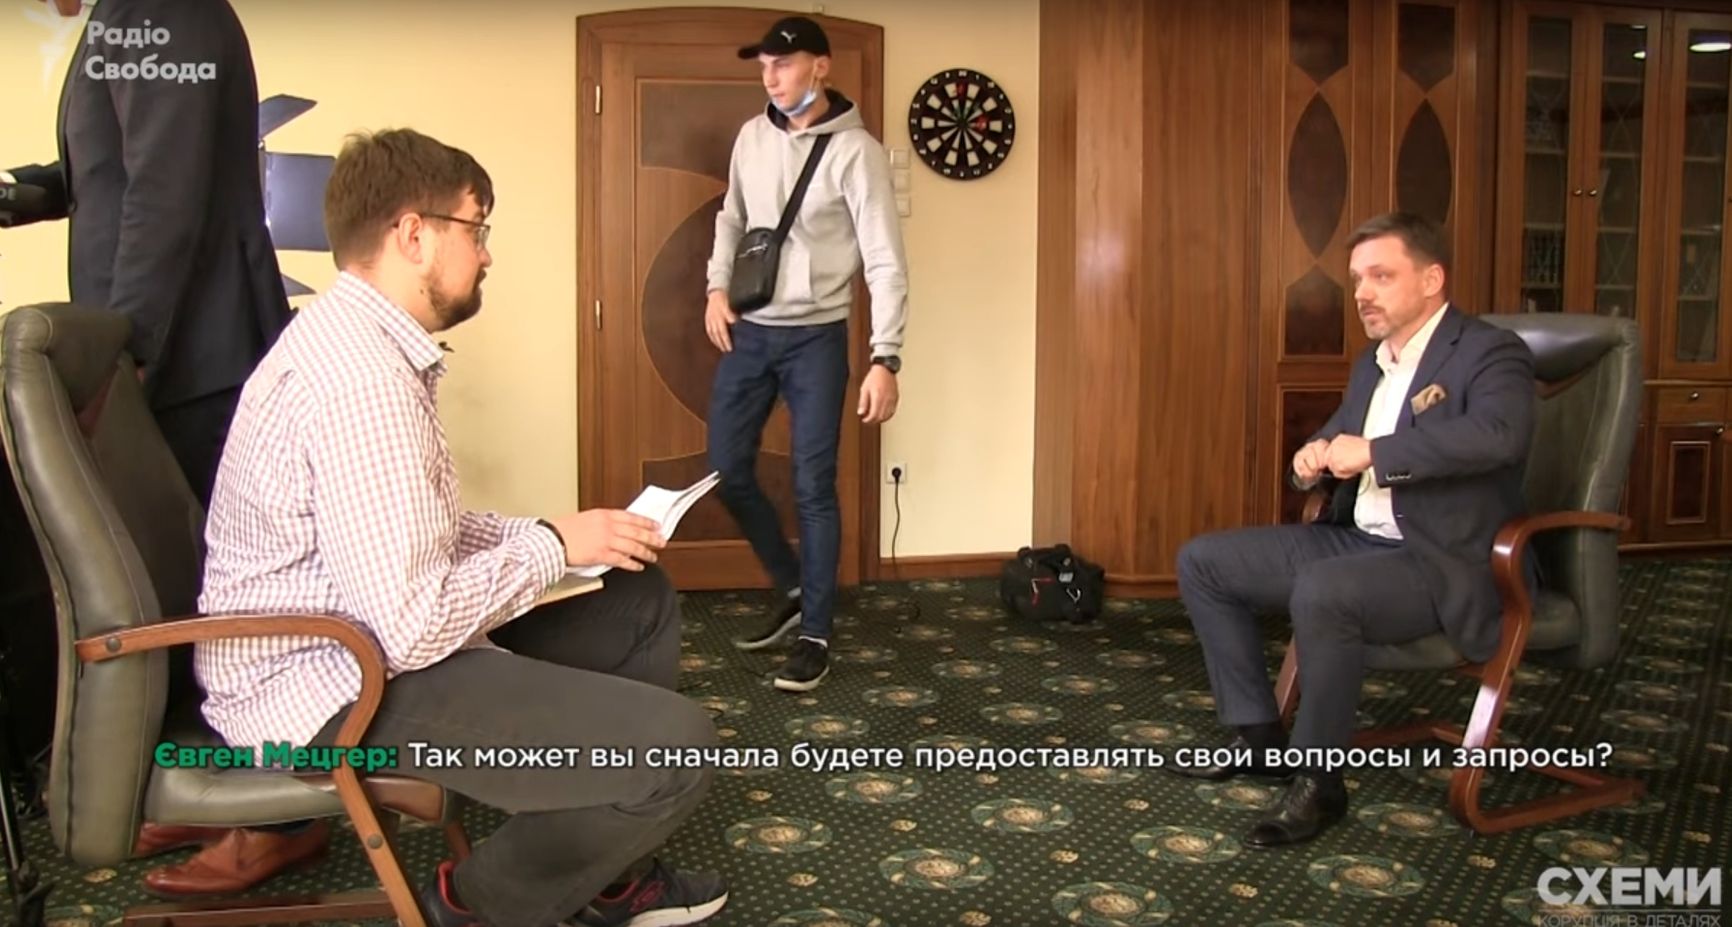 «Володя, вирубай його, будь ласка!»: Як напад на журналістів в ході інтерв'ю призвело до відставки глави Укрексімбанку